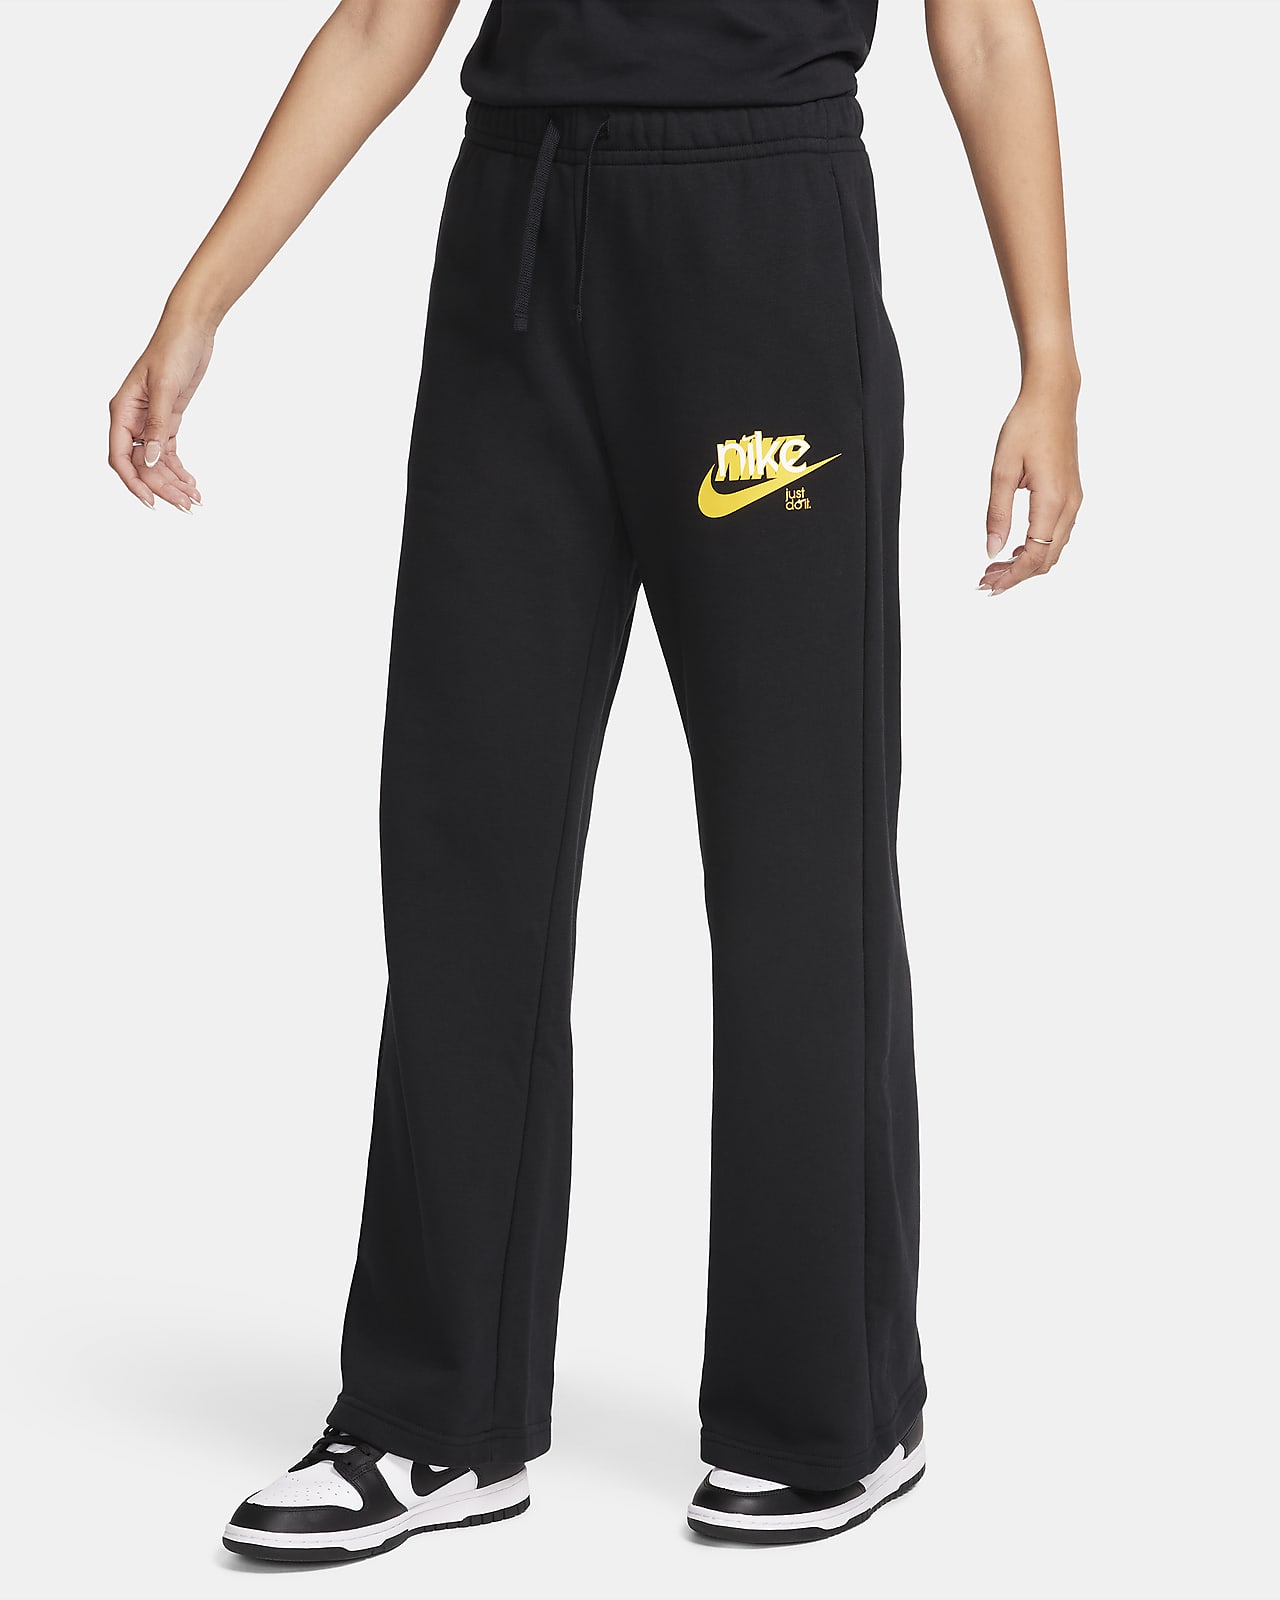 Pants de French Terry con gráfico de tiro medio de pierna ancha para mujer  Nike Sportswear Club Fleece. Nike MX